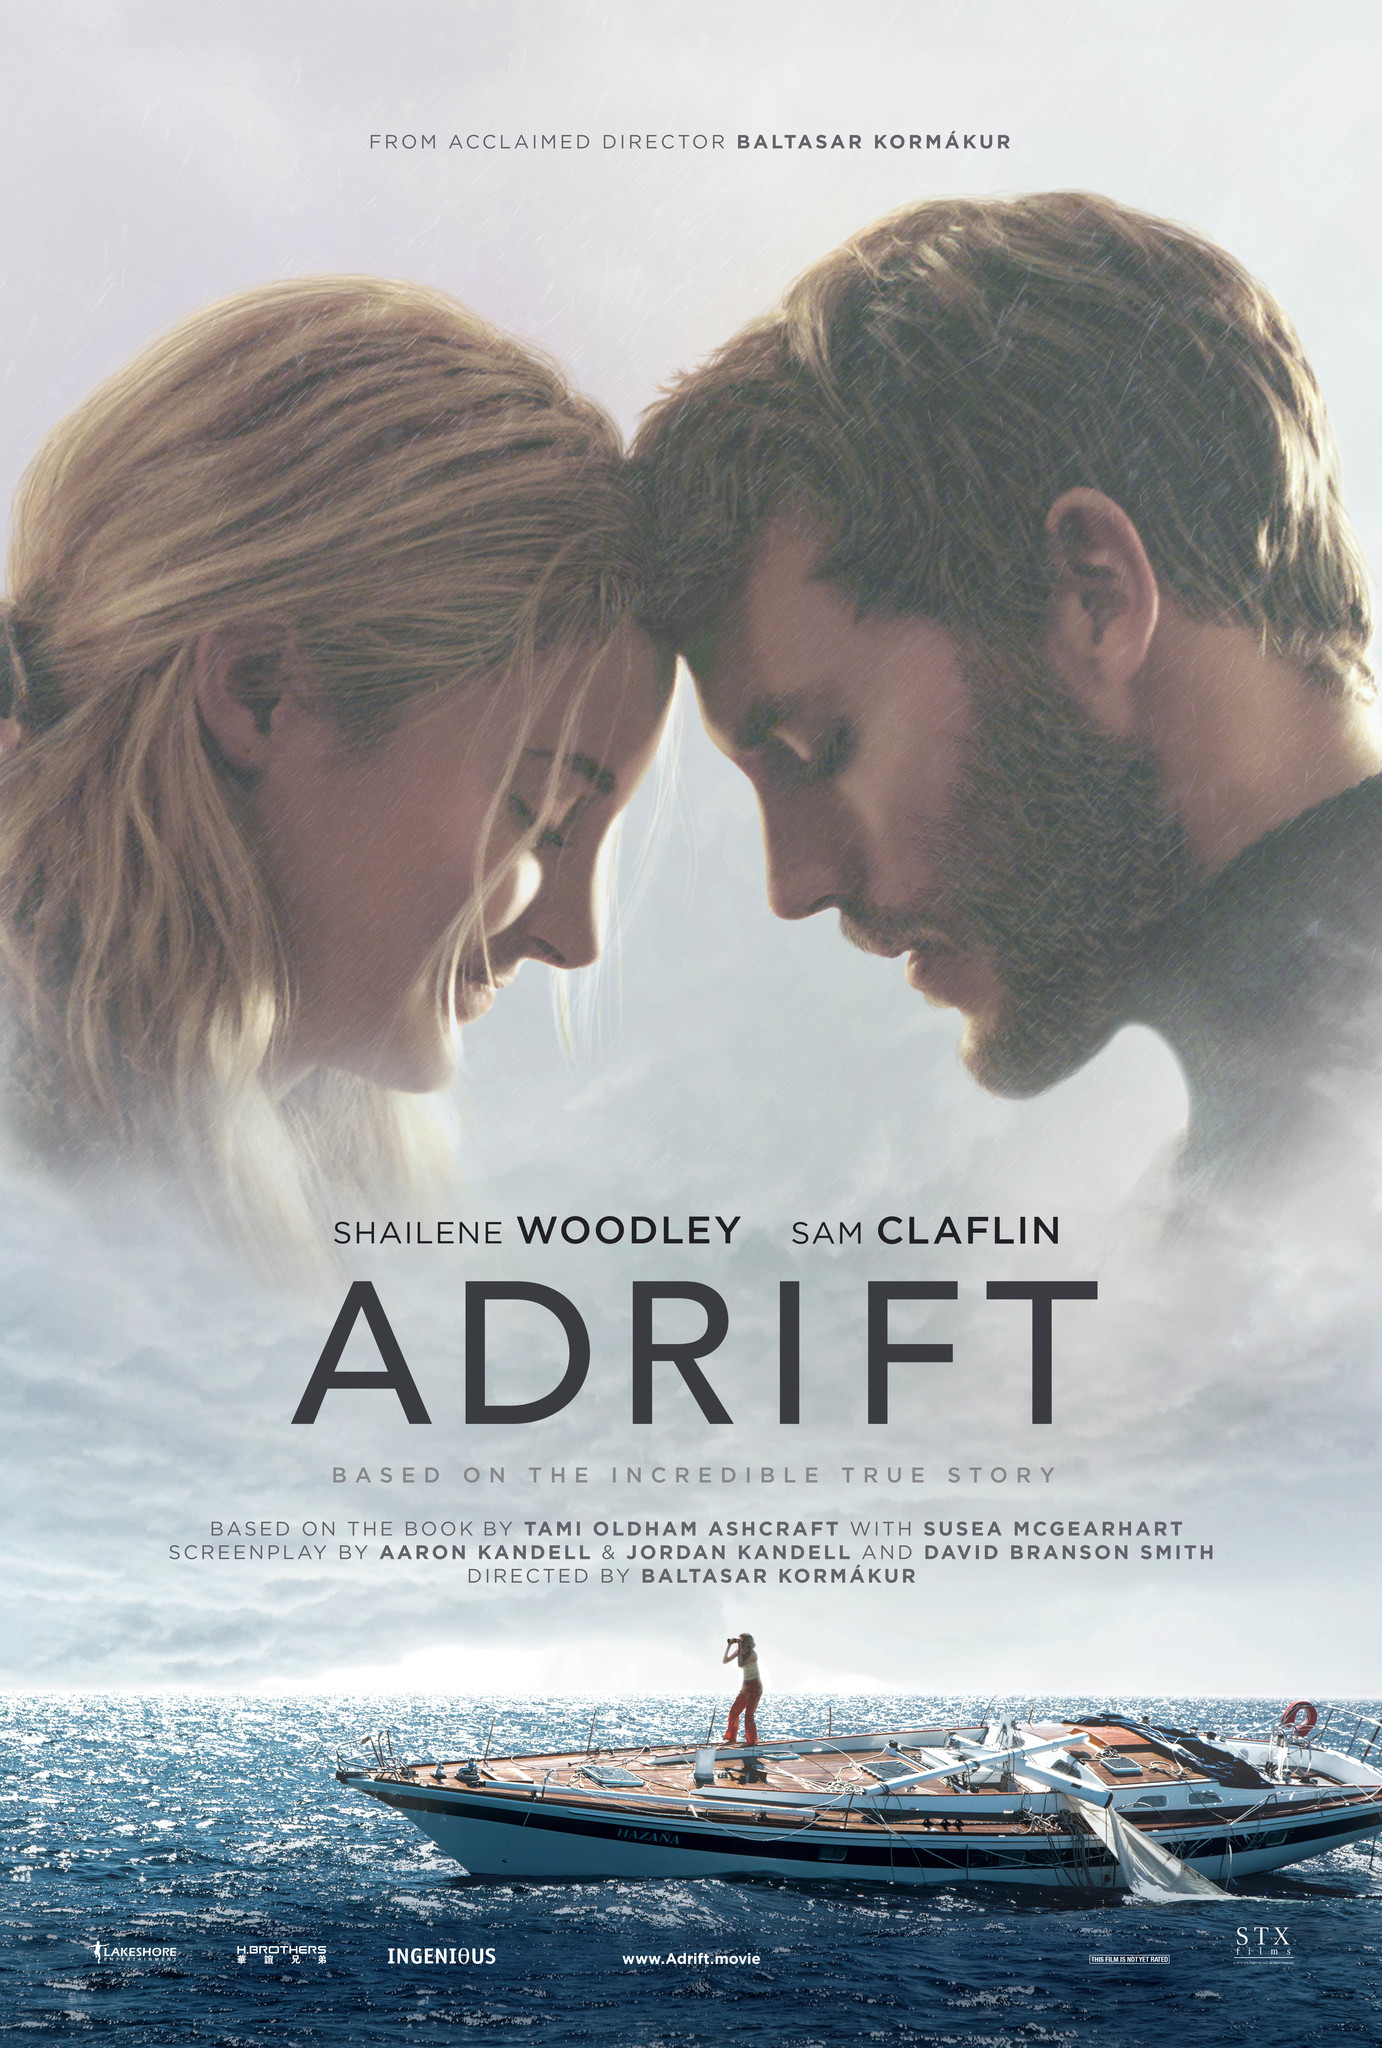 Nonton film Adrift layarkaca21 indoxx1 ganool online streaming terbaru